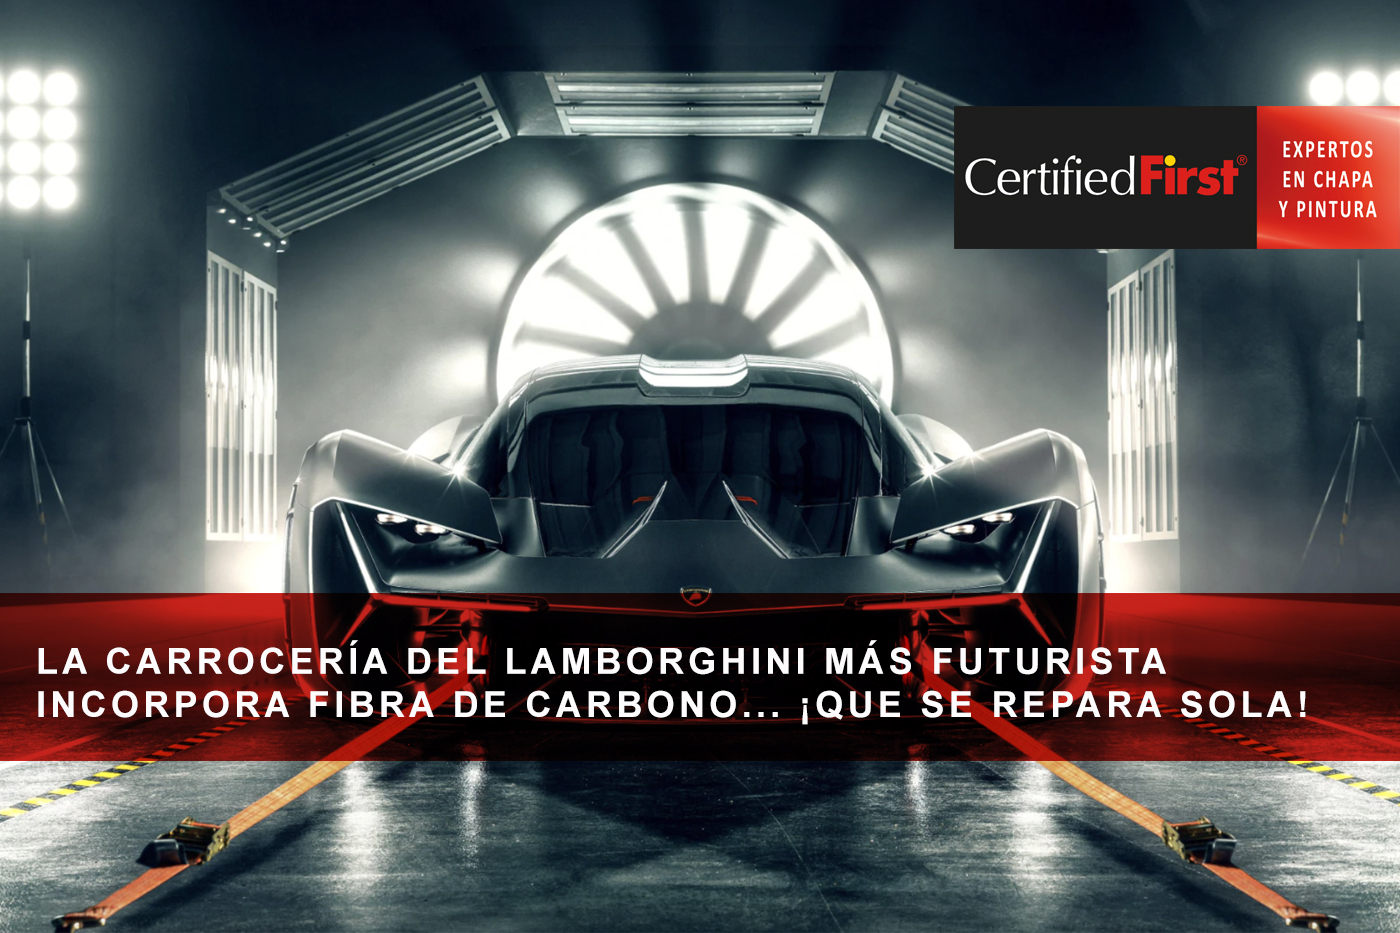 La carrocería del Lamborghini más futurista incorpora fibra de carbono... ¡que se repara sola!